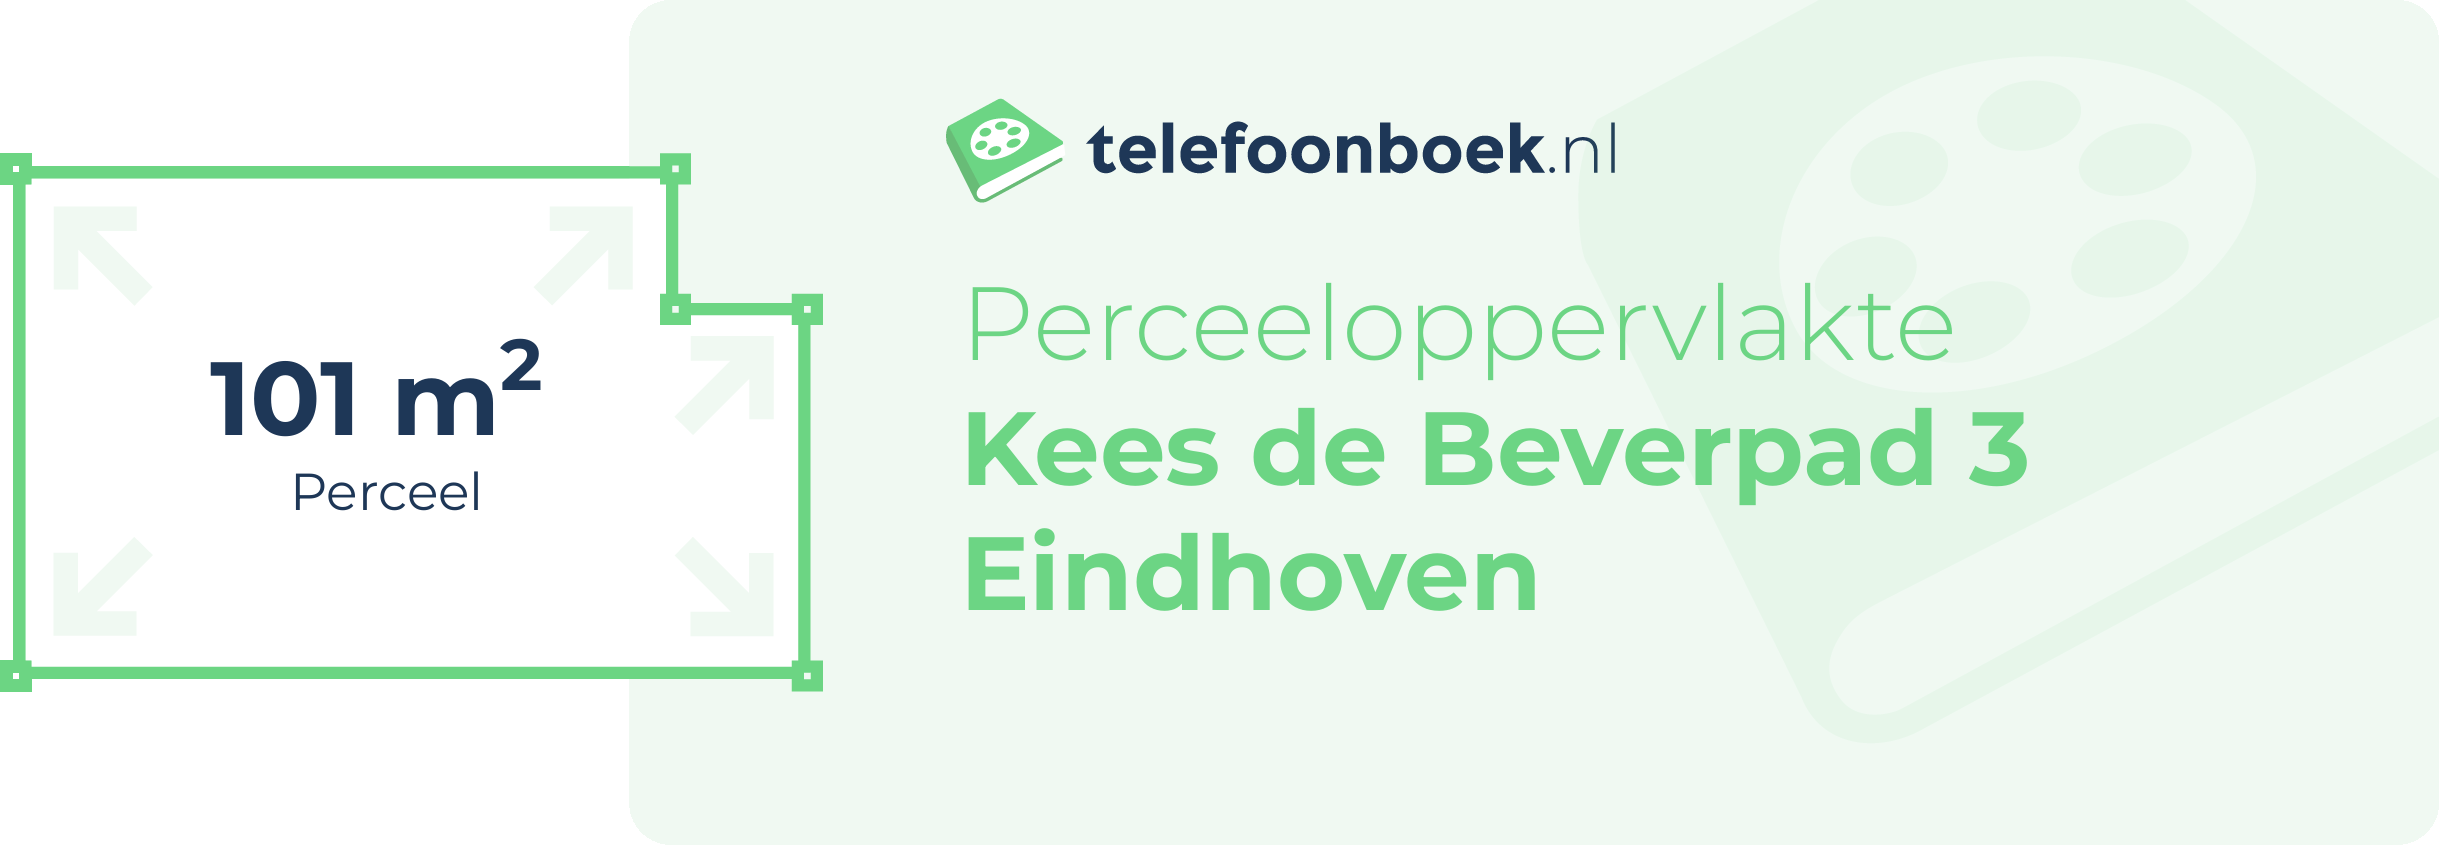 Perceeloppervlakte Kees De Beverpad 3 Eindhoven